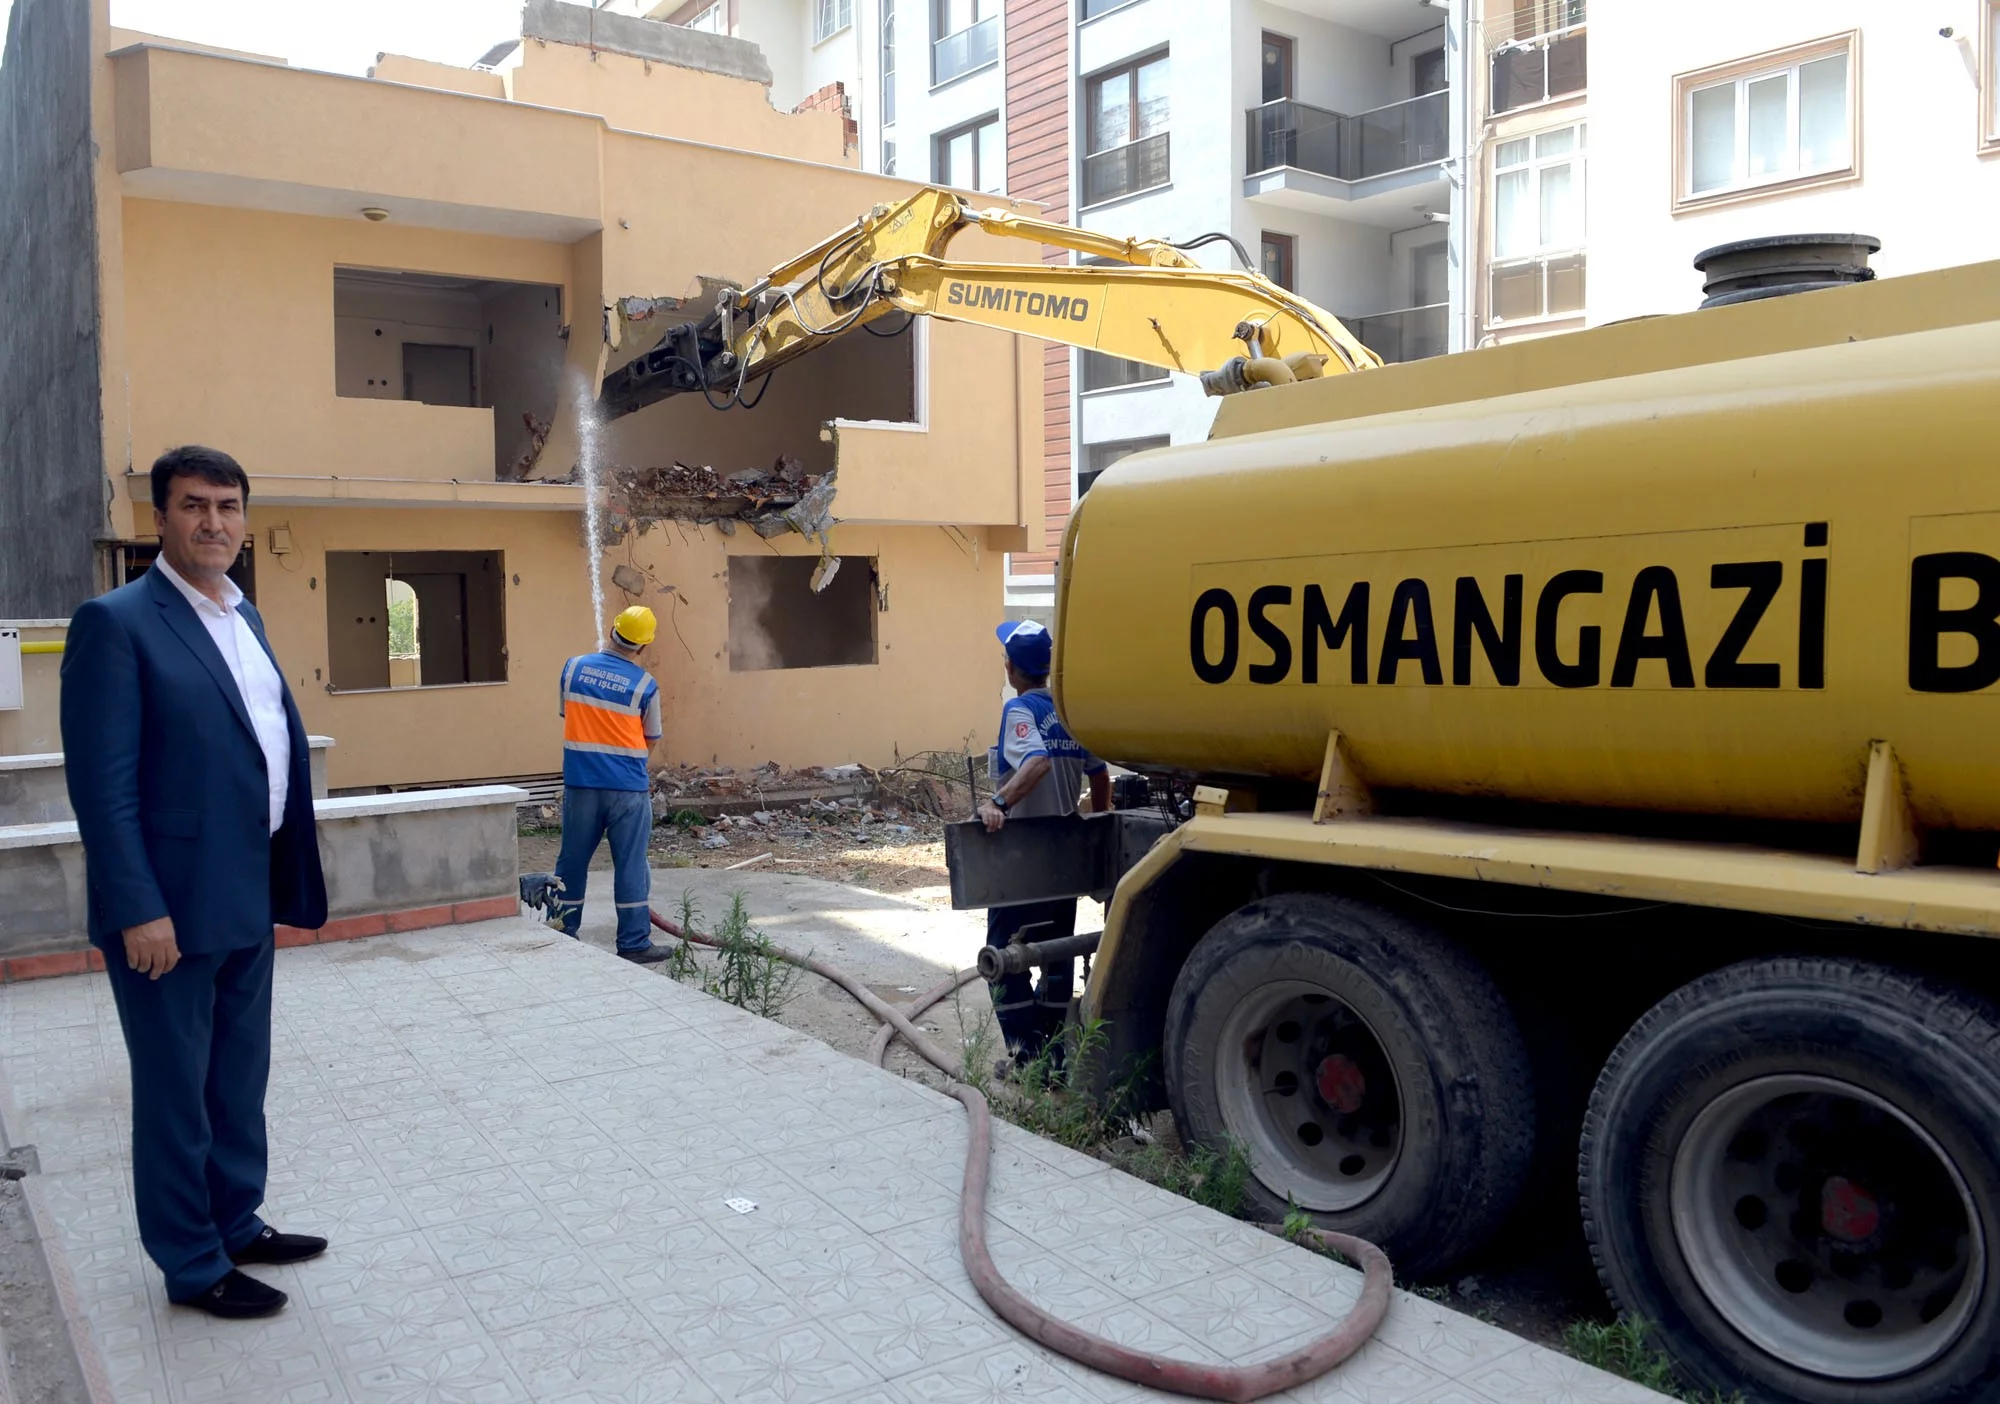 Osmangazi’de çıkmaz sokaklar tarih oluyor